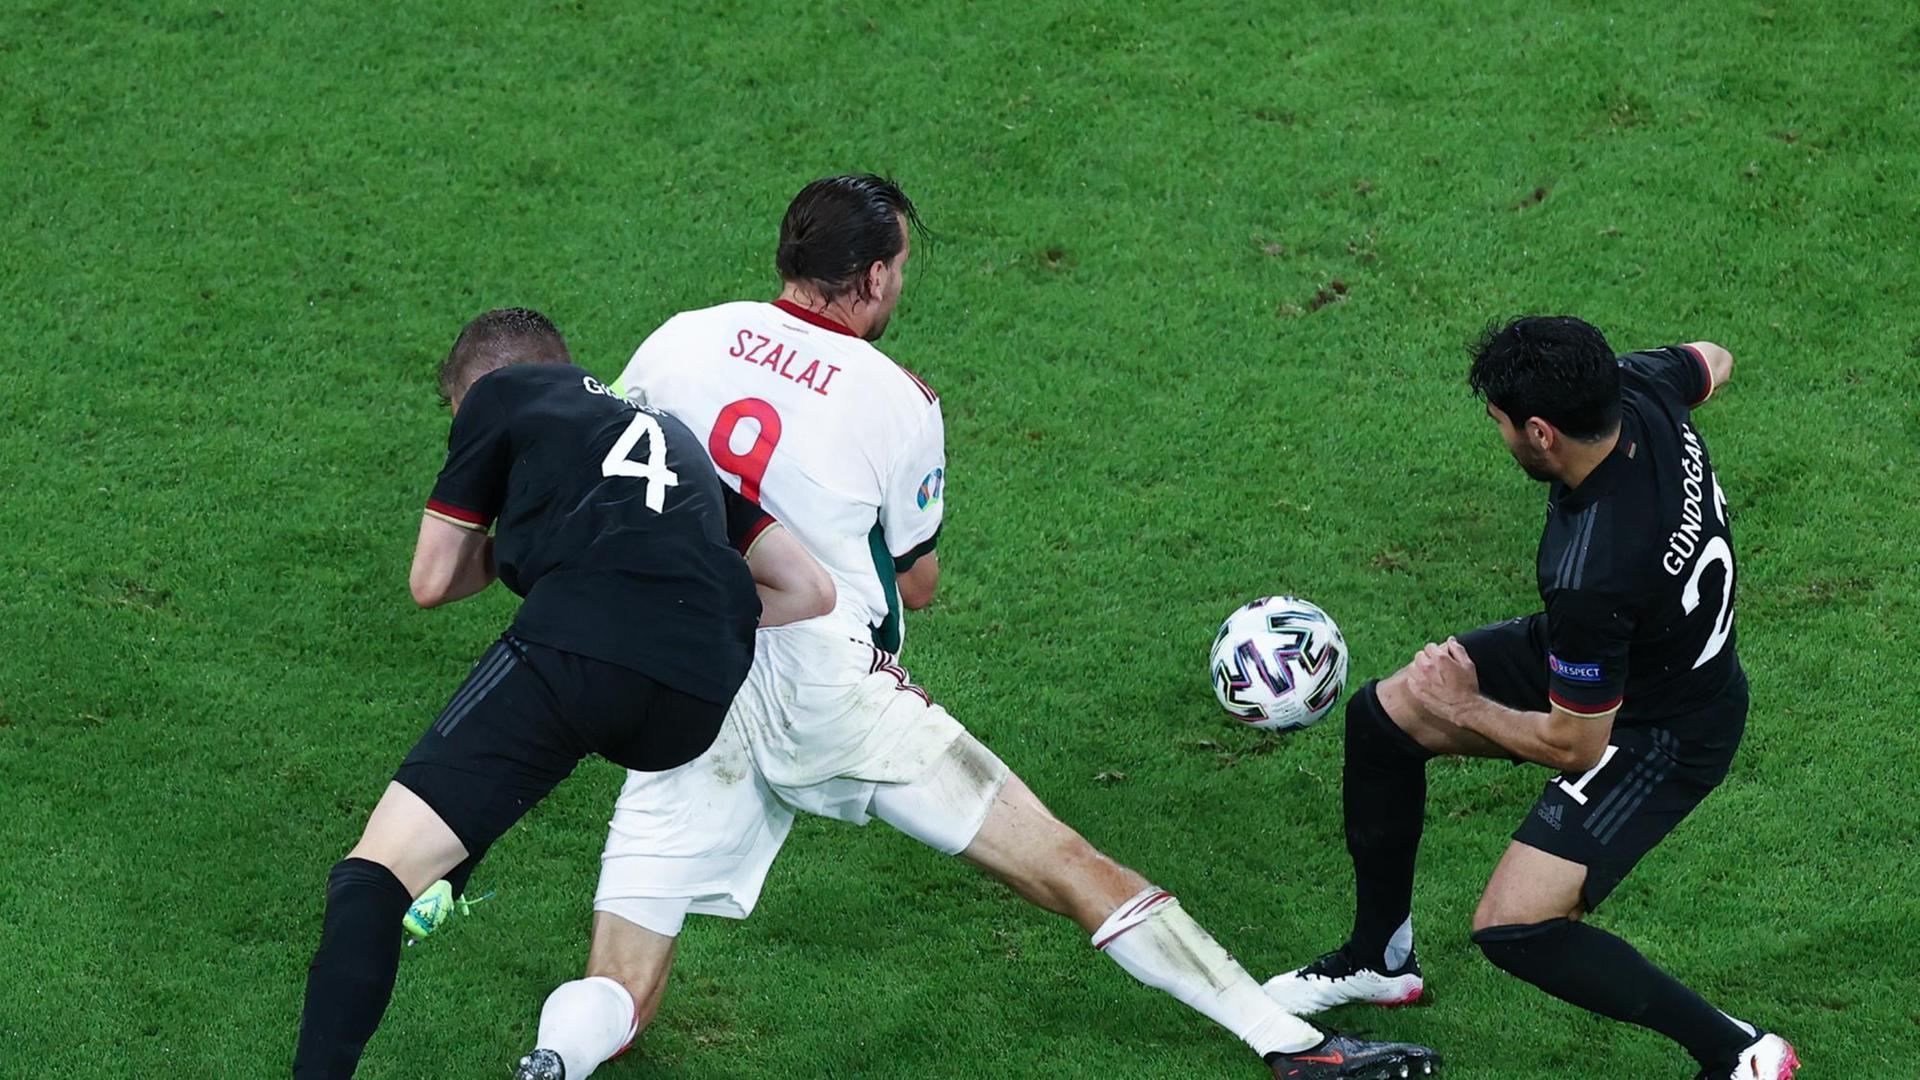 Die deutsche Fußball-Mannschaft spielt gegen die ungarische Fußball-Mannschaft.